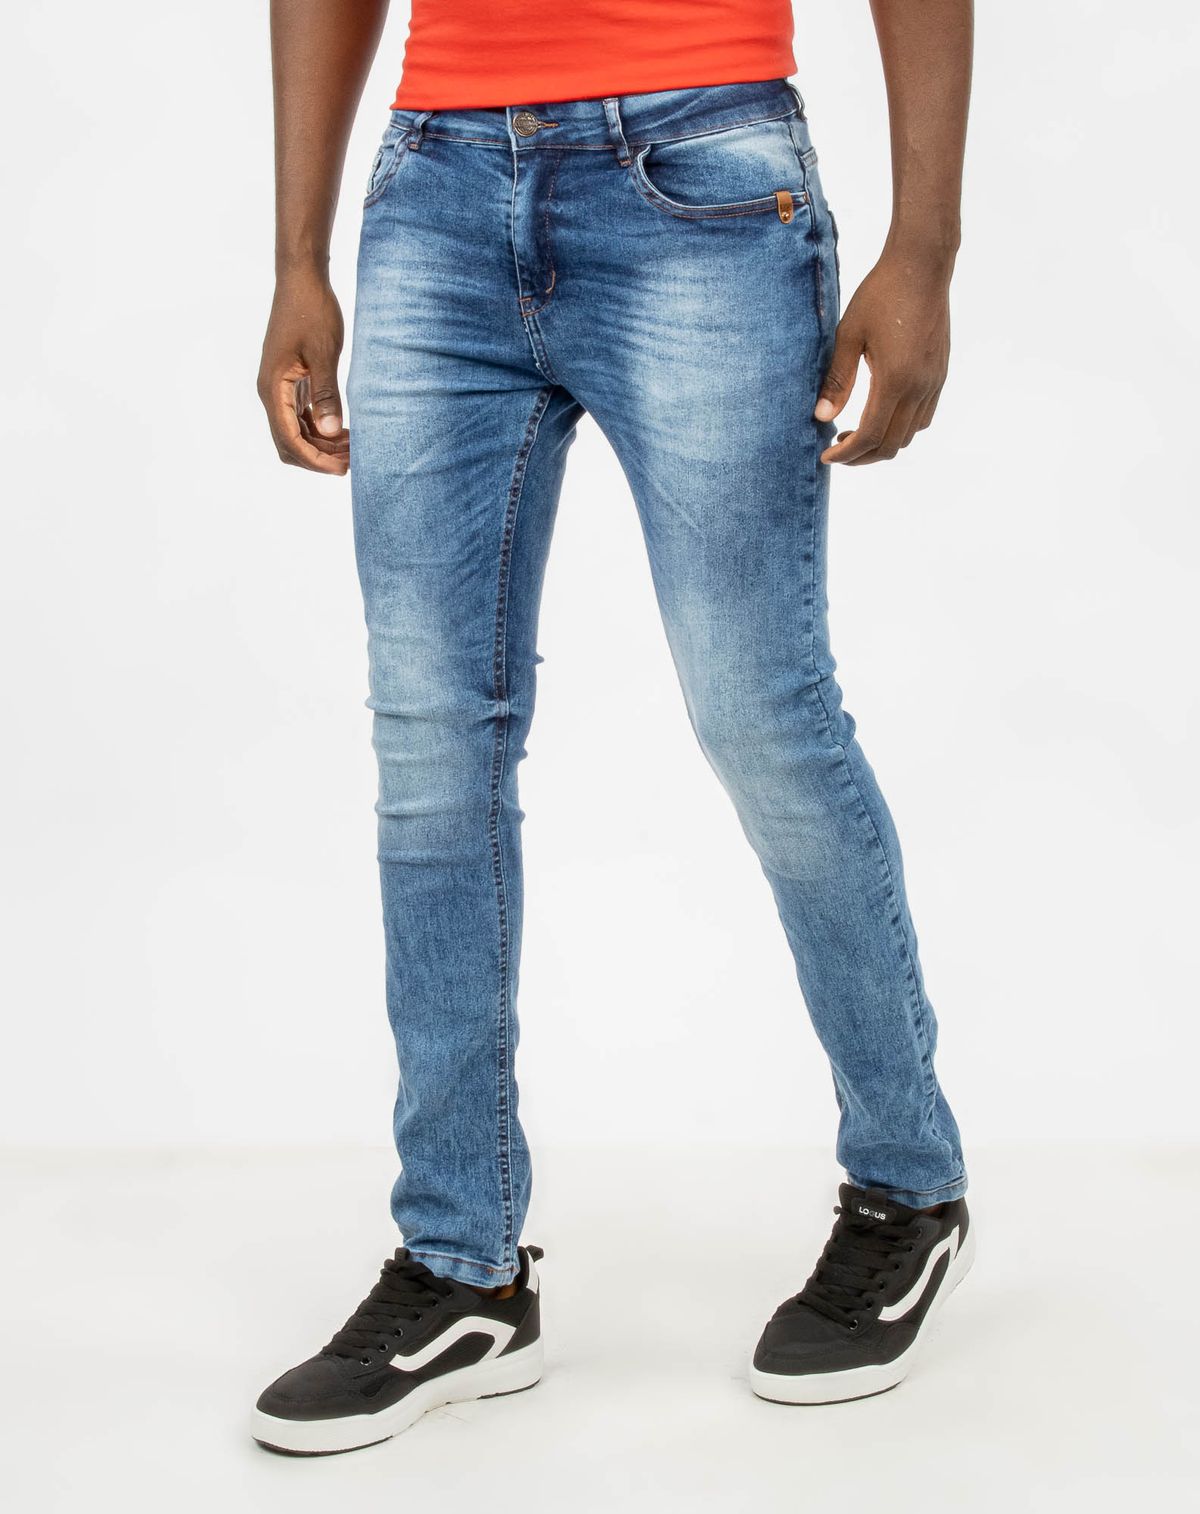 625008001-calca-jeans-skinny-masculina-bolsos-jeans-38-1f0